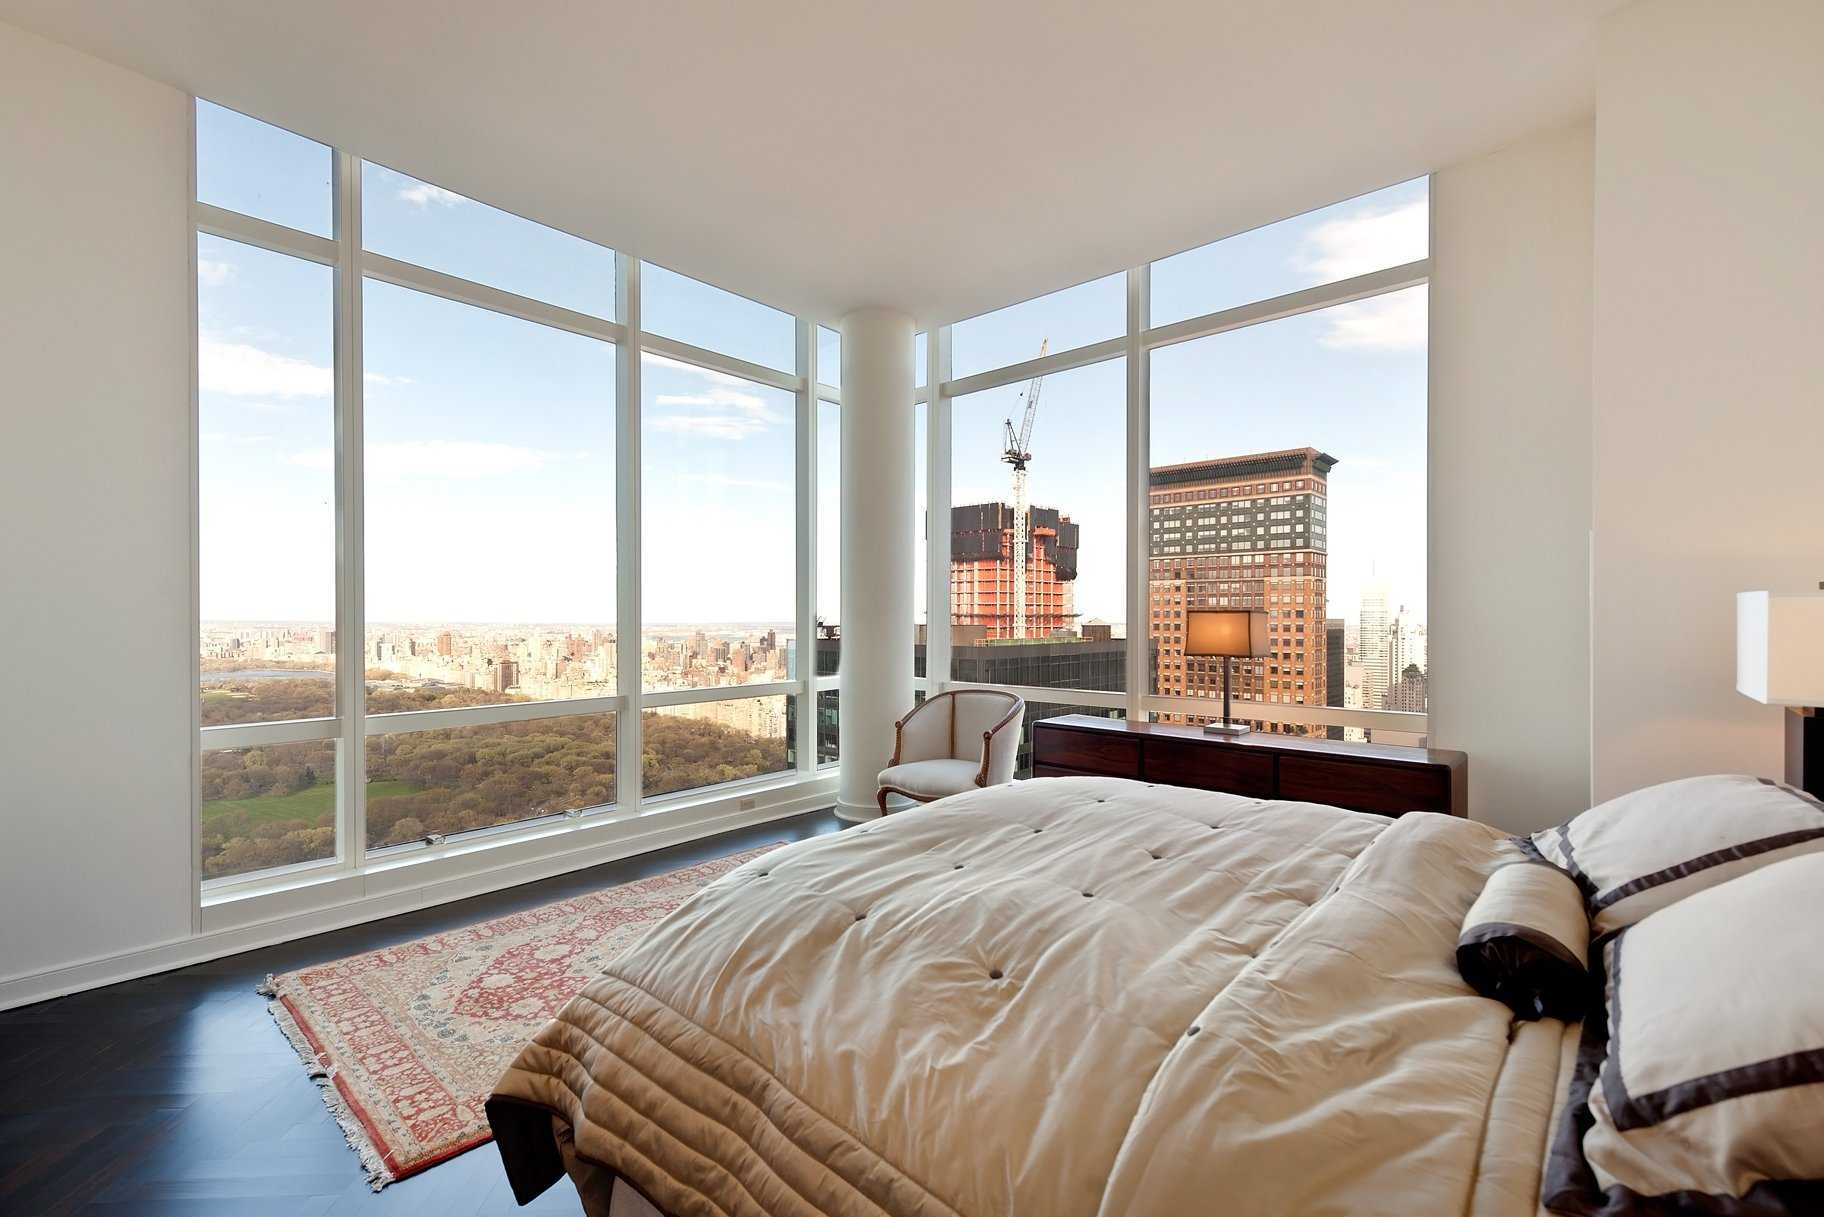 Панорамные окна в квартире: фото красивых решений в интерьере